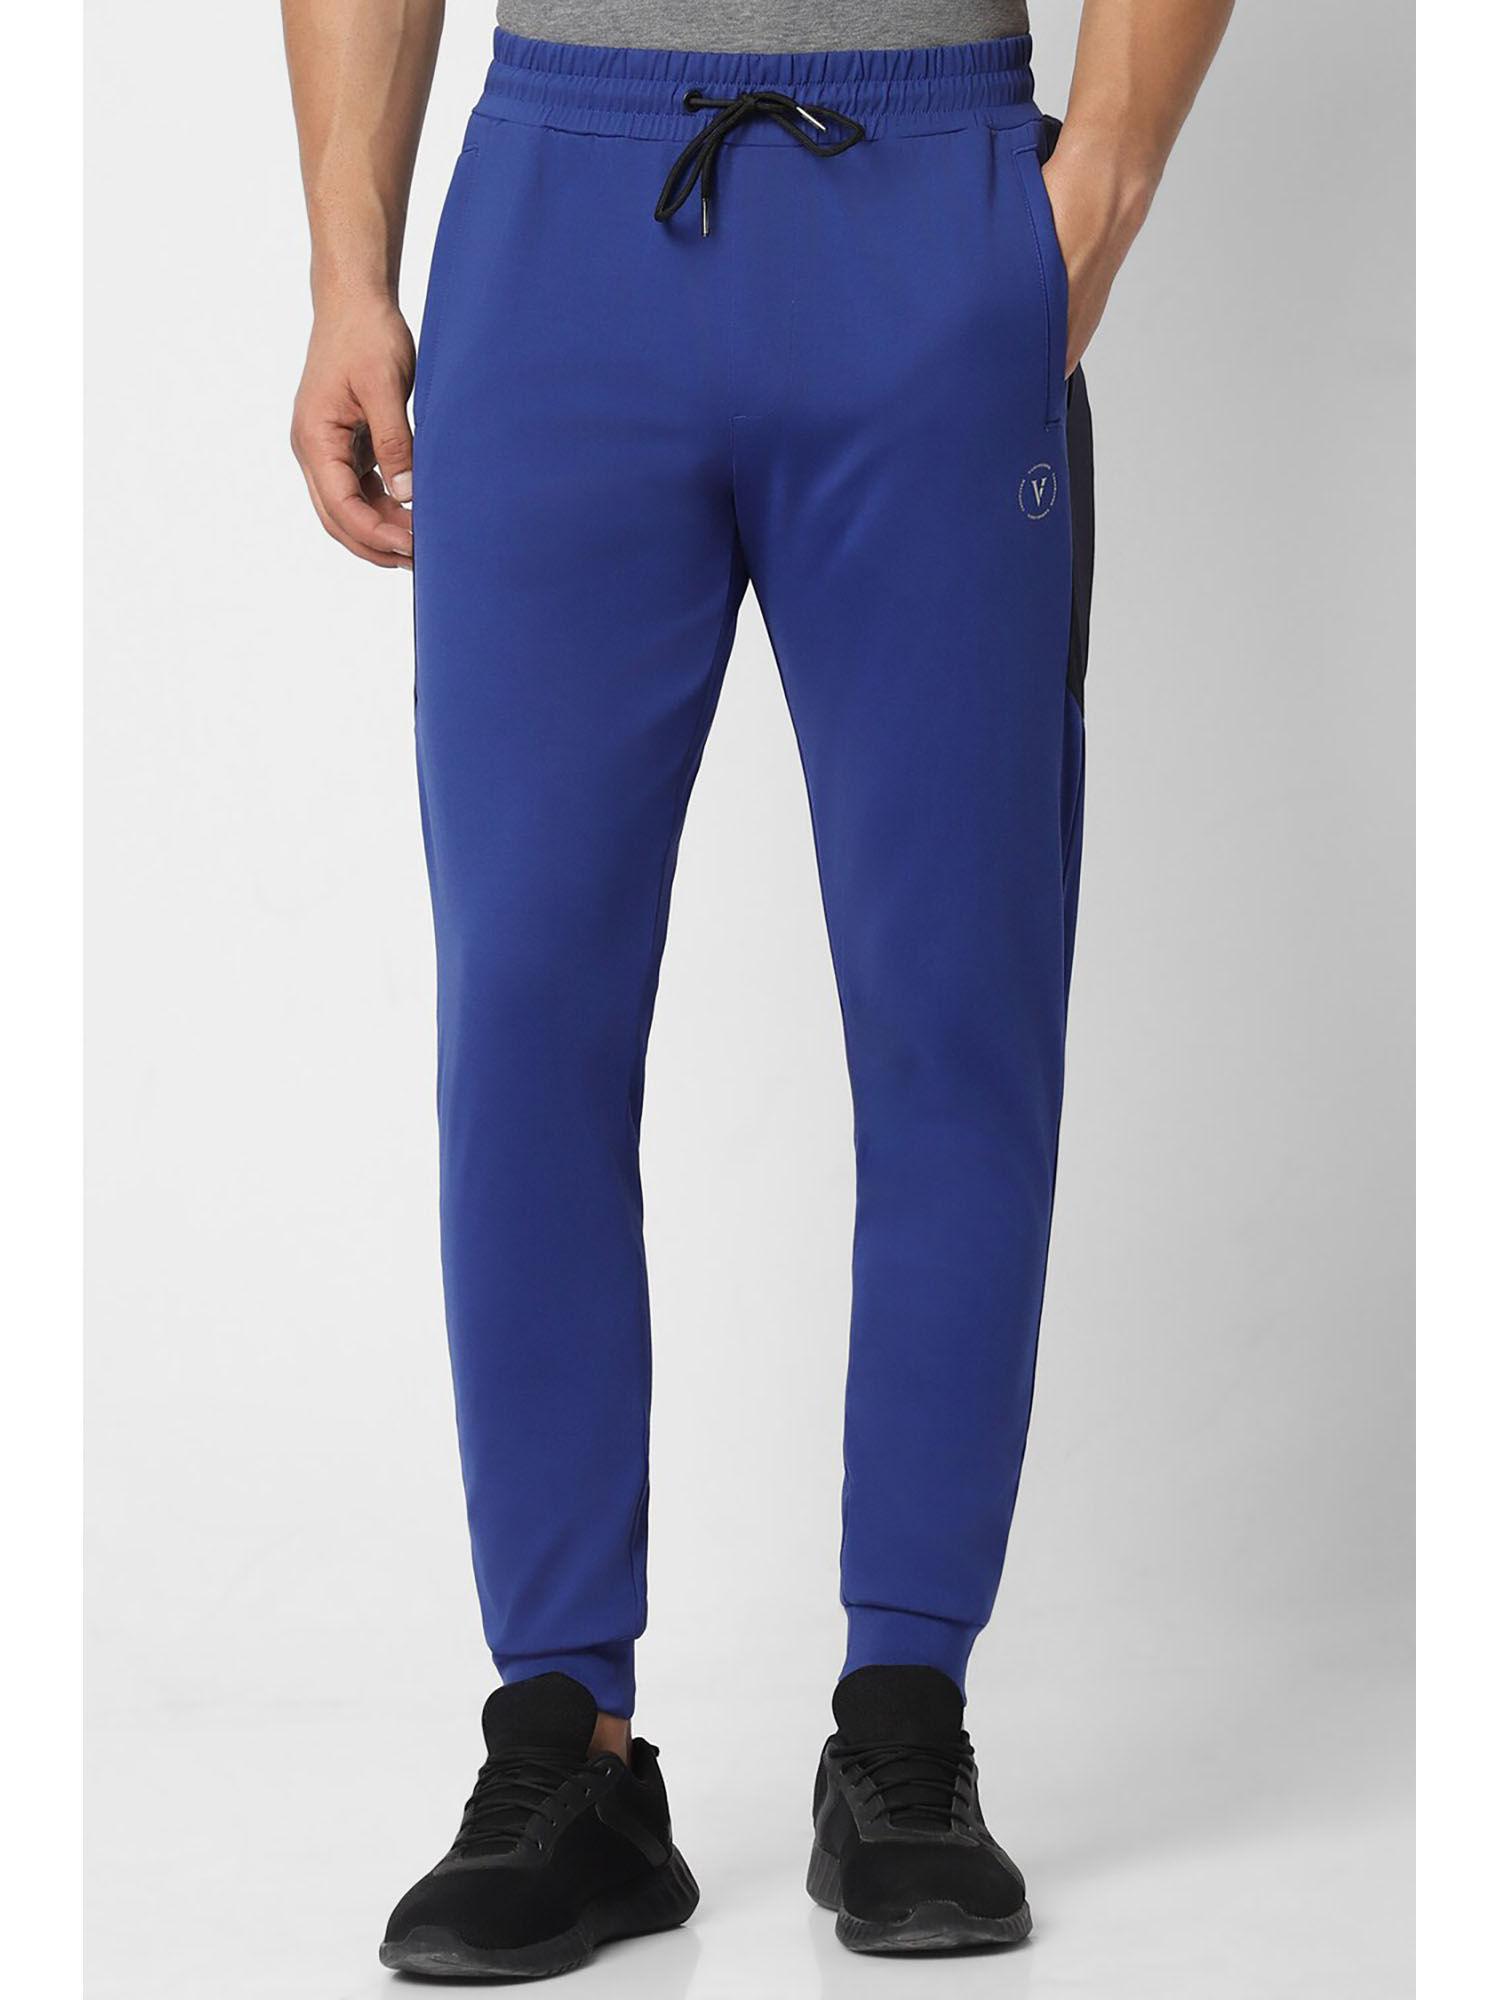 men blue solid casual jogger pants